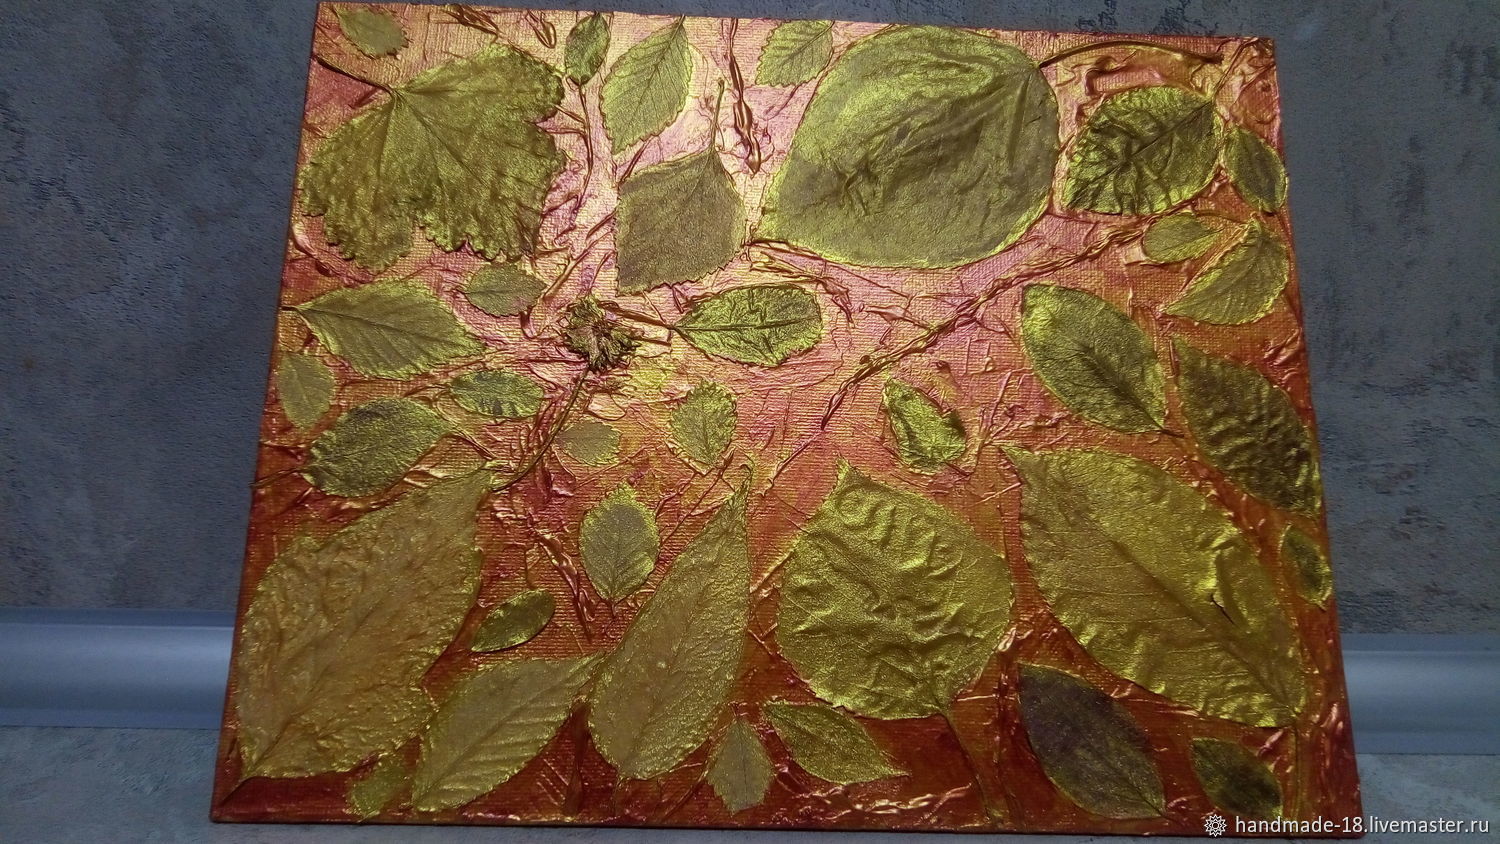  Золотая осень. Листопад, Картины, Тюмень,  Фото №1